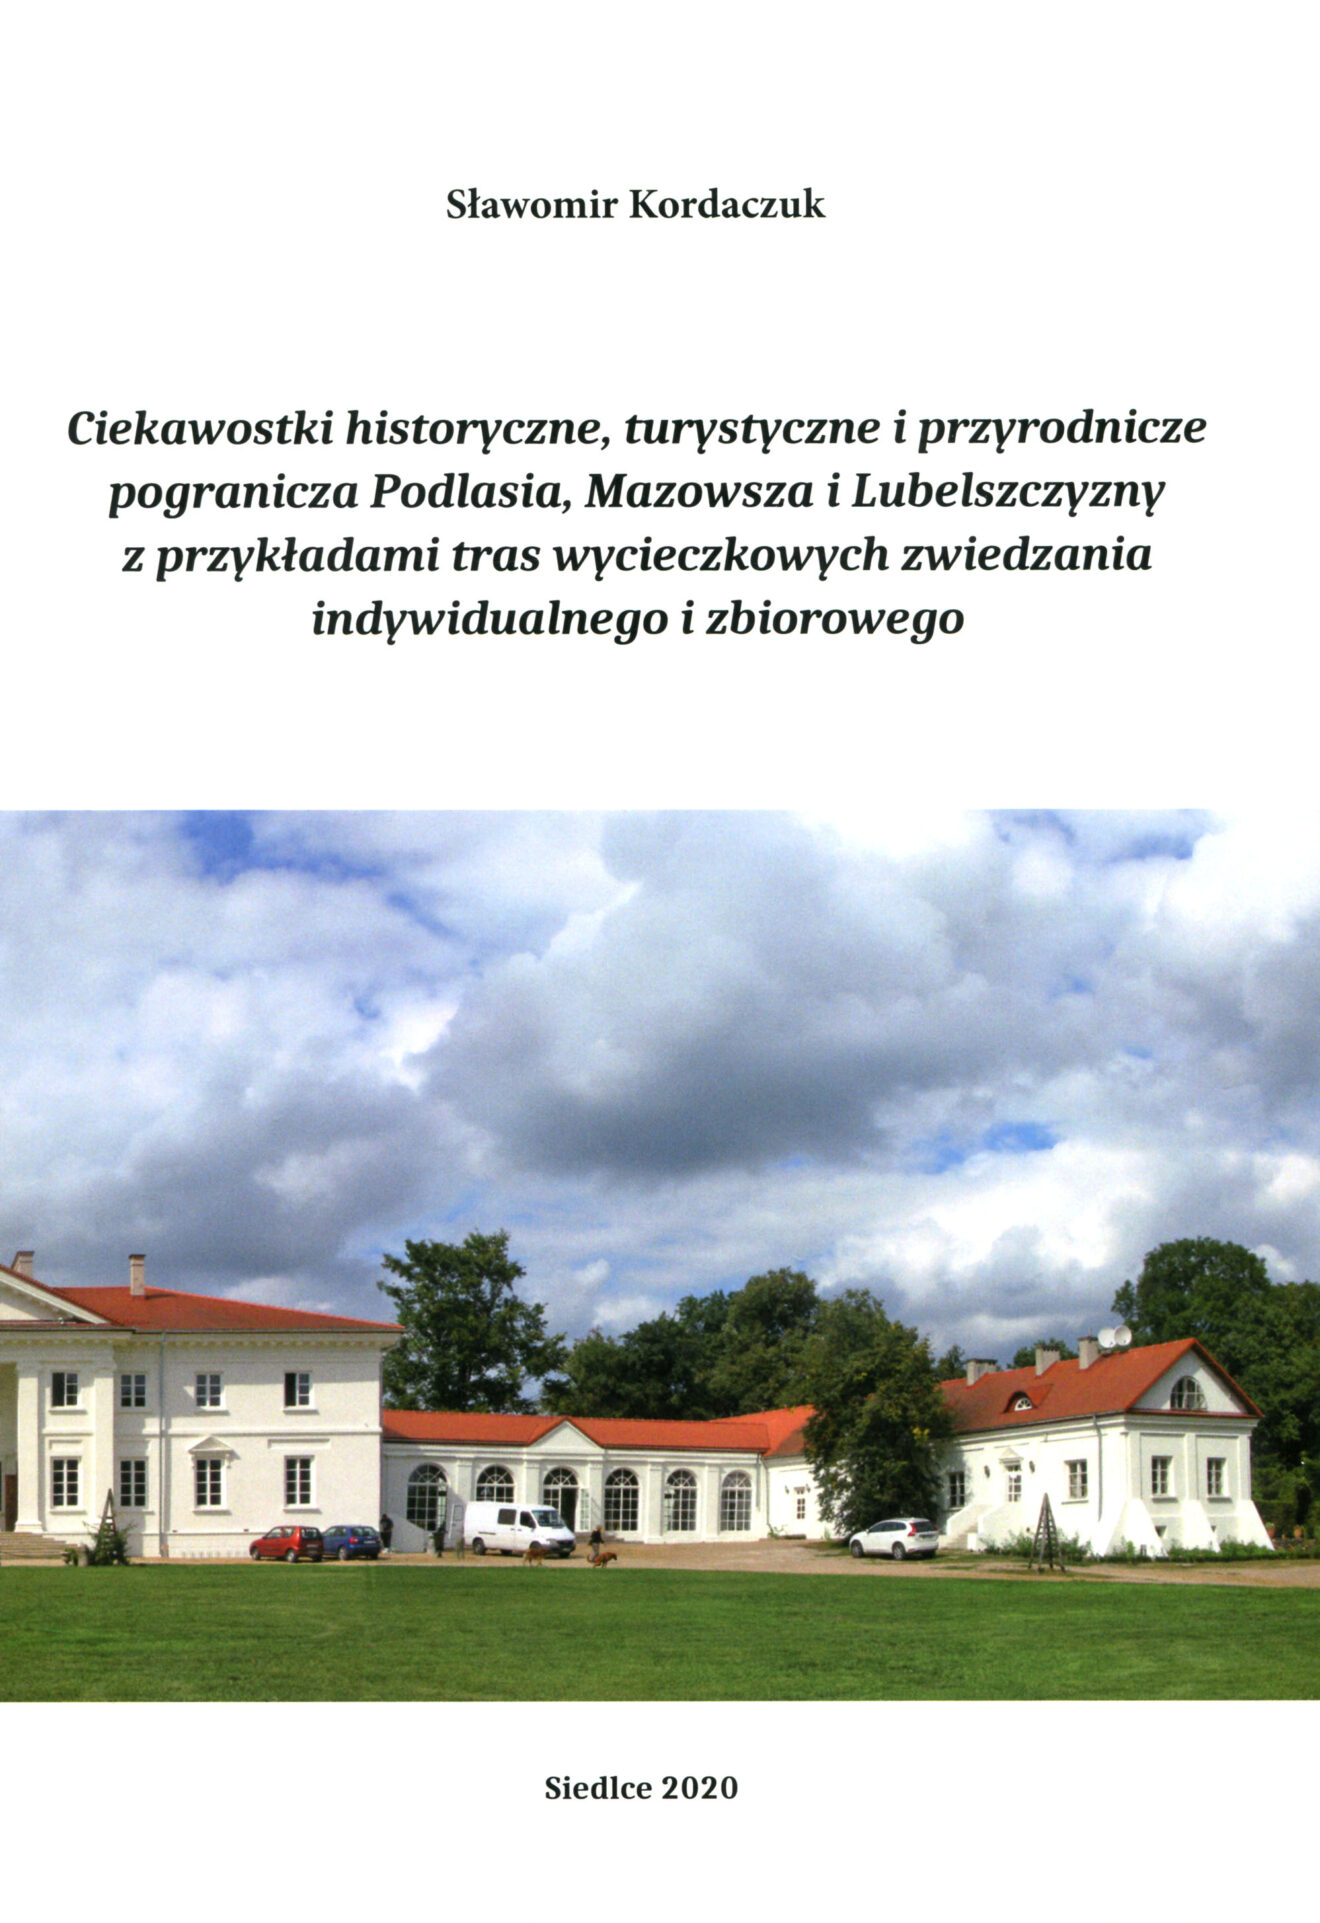 Skan okładki książki w tonacji miałej z umieszczoną fotografią pałacu w Korczewie oraz tytułem, autorem i datą wydania 